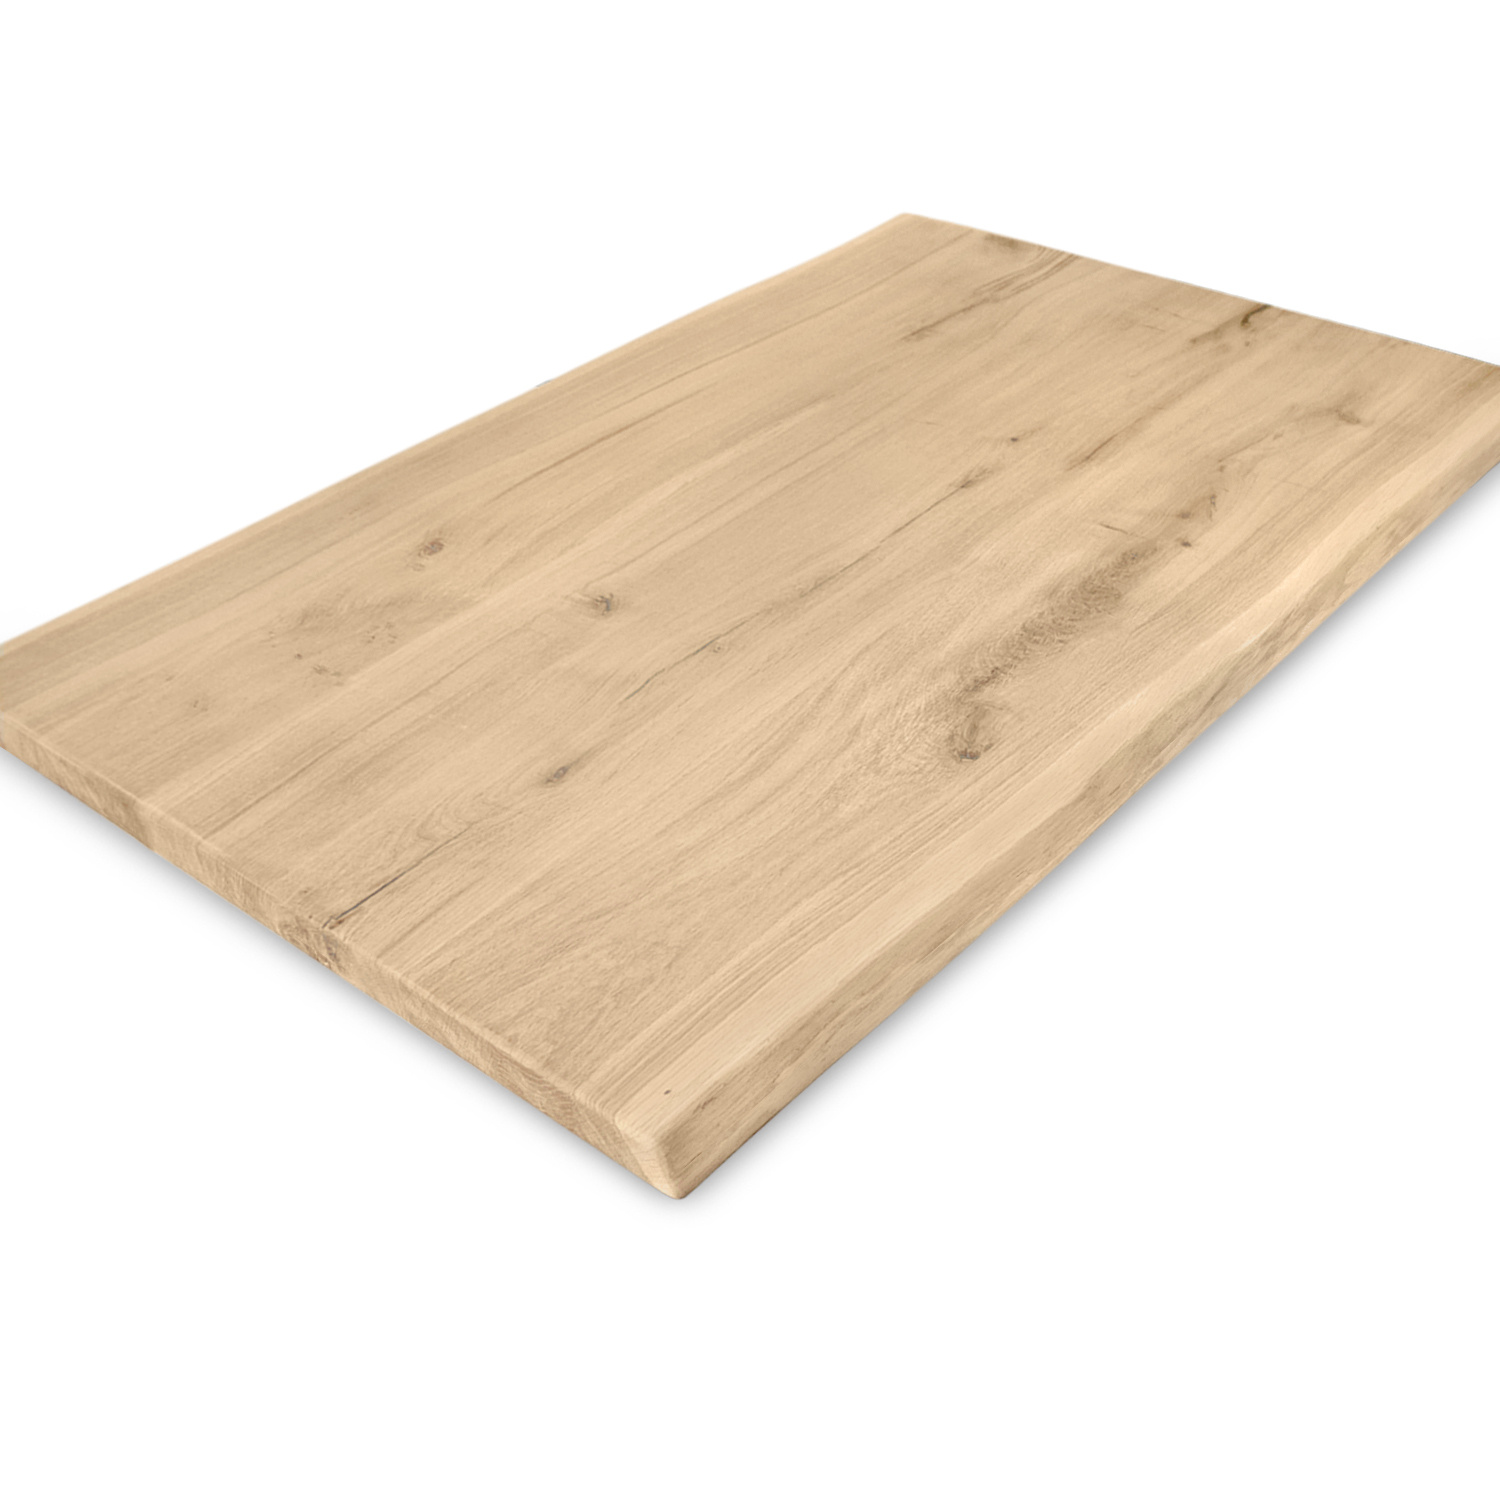  Tischplatte Wildeiche - Baumkante - 2,5 cm dick (1-Schicht) - XXL Lamellen (14-20 cm breit) - Asteiche (rustikal) mit natürlichen Baumkant - verleimt & künstlich getrocknet (HF 8-12%) - verschiedene Größen